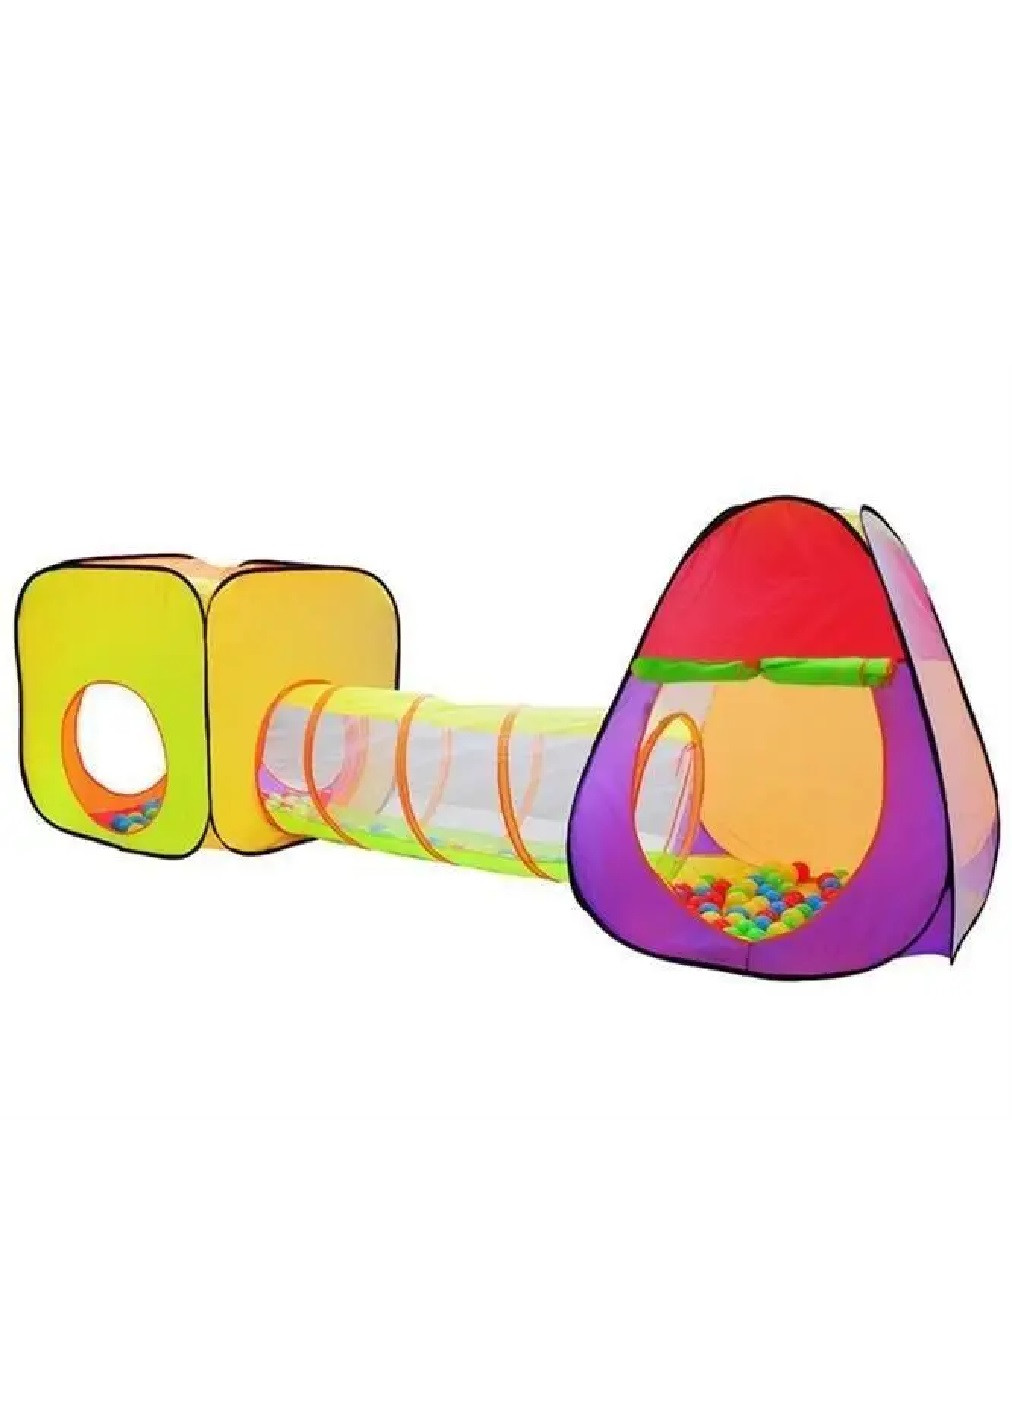 Детская игровая палатка домик иглу двойная с туннелем мячами 3 в 1 для детей малышей от 3 лет 280x83x100 см (474882-Prob) Unbranded (260089771)